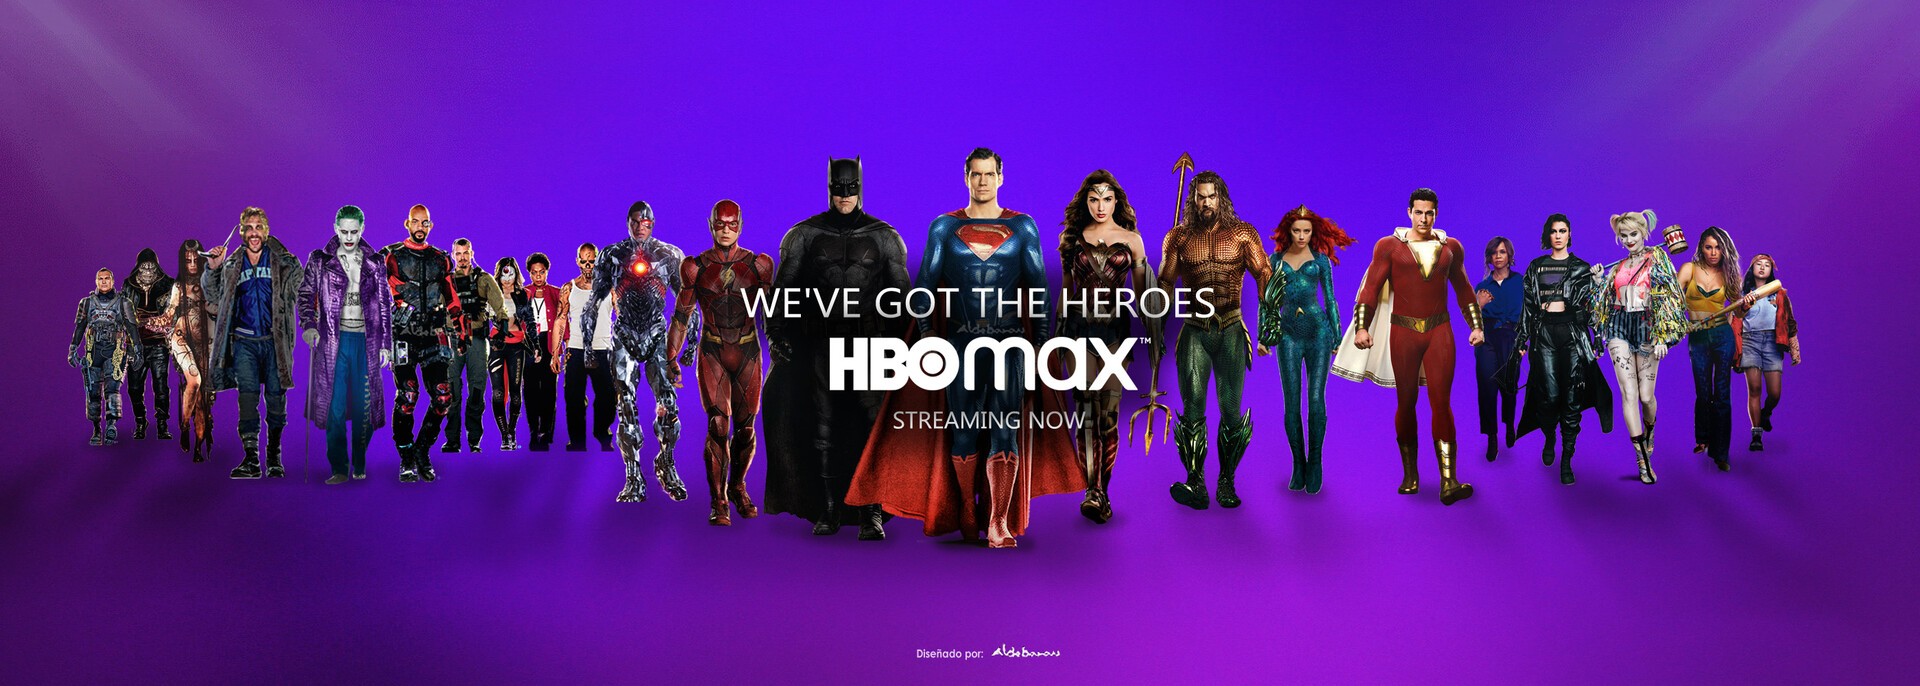 Poster de divulgação do HBO Max